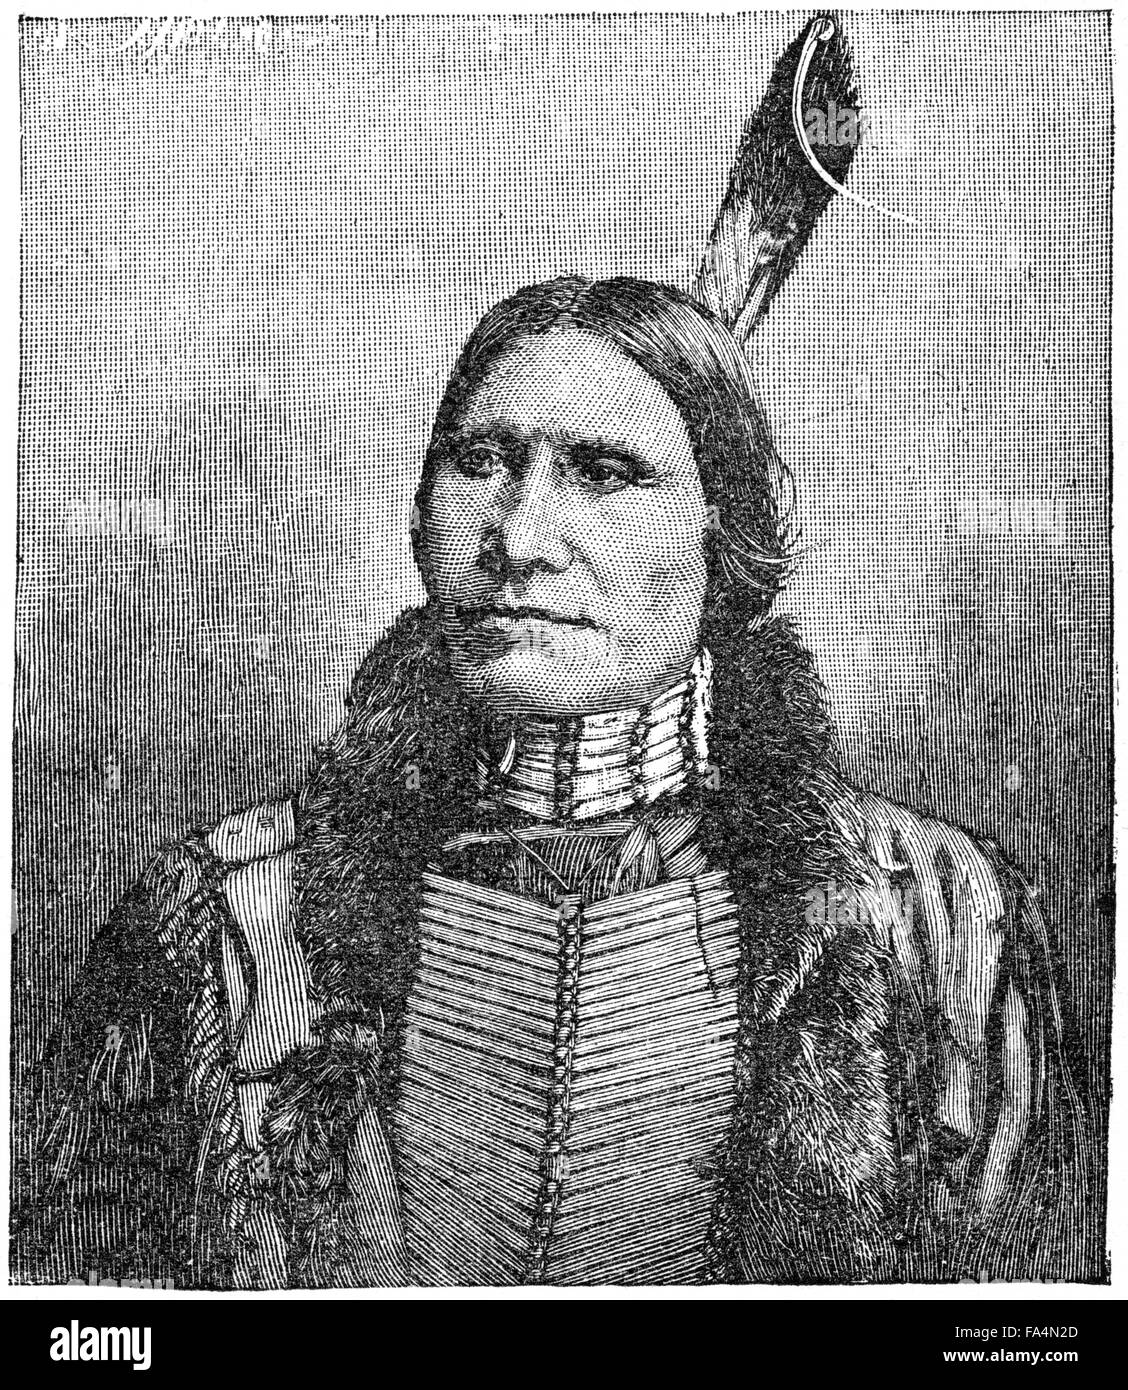 Chef de l'American Horse (1840-1908), chef Lakota Oglala, livre des illustrations de "horreurs indien ou les massacres de la hommes rouge", par Henry Davenport Northrop, 1891 Banque D'Images